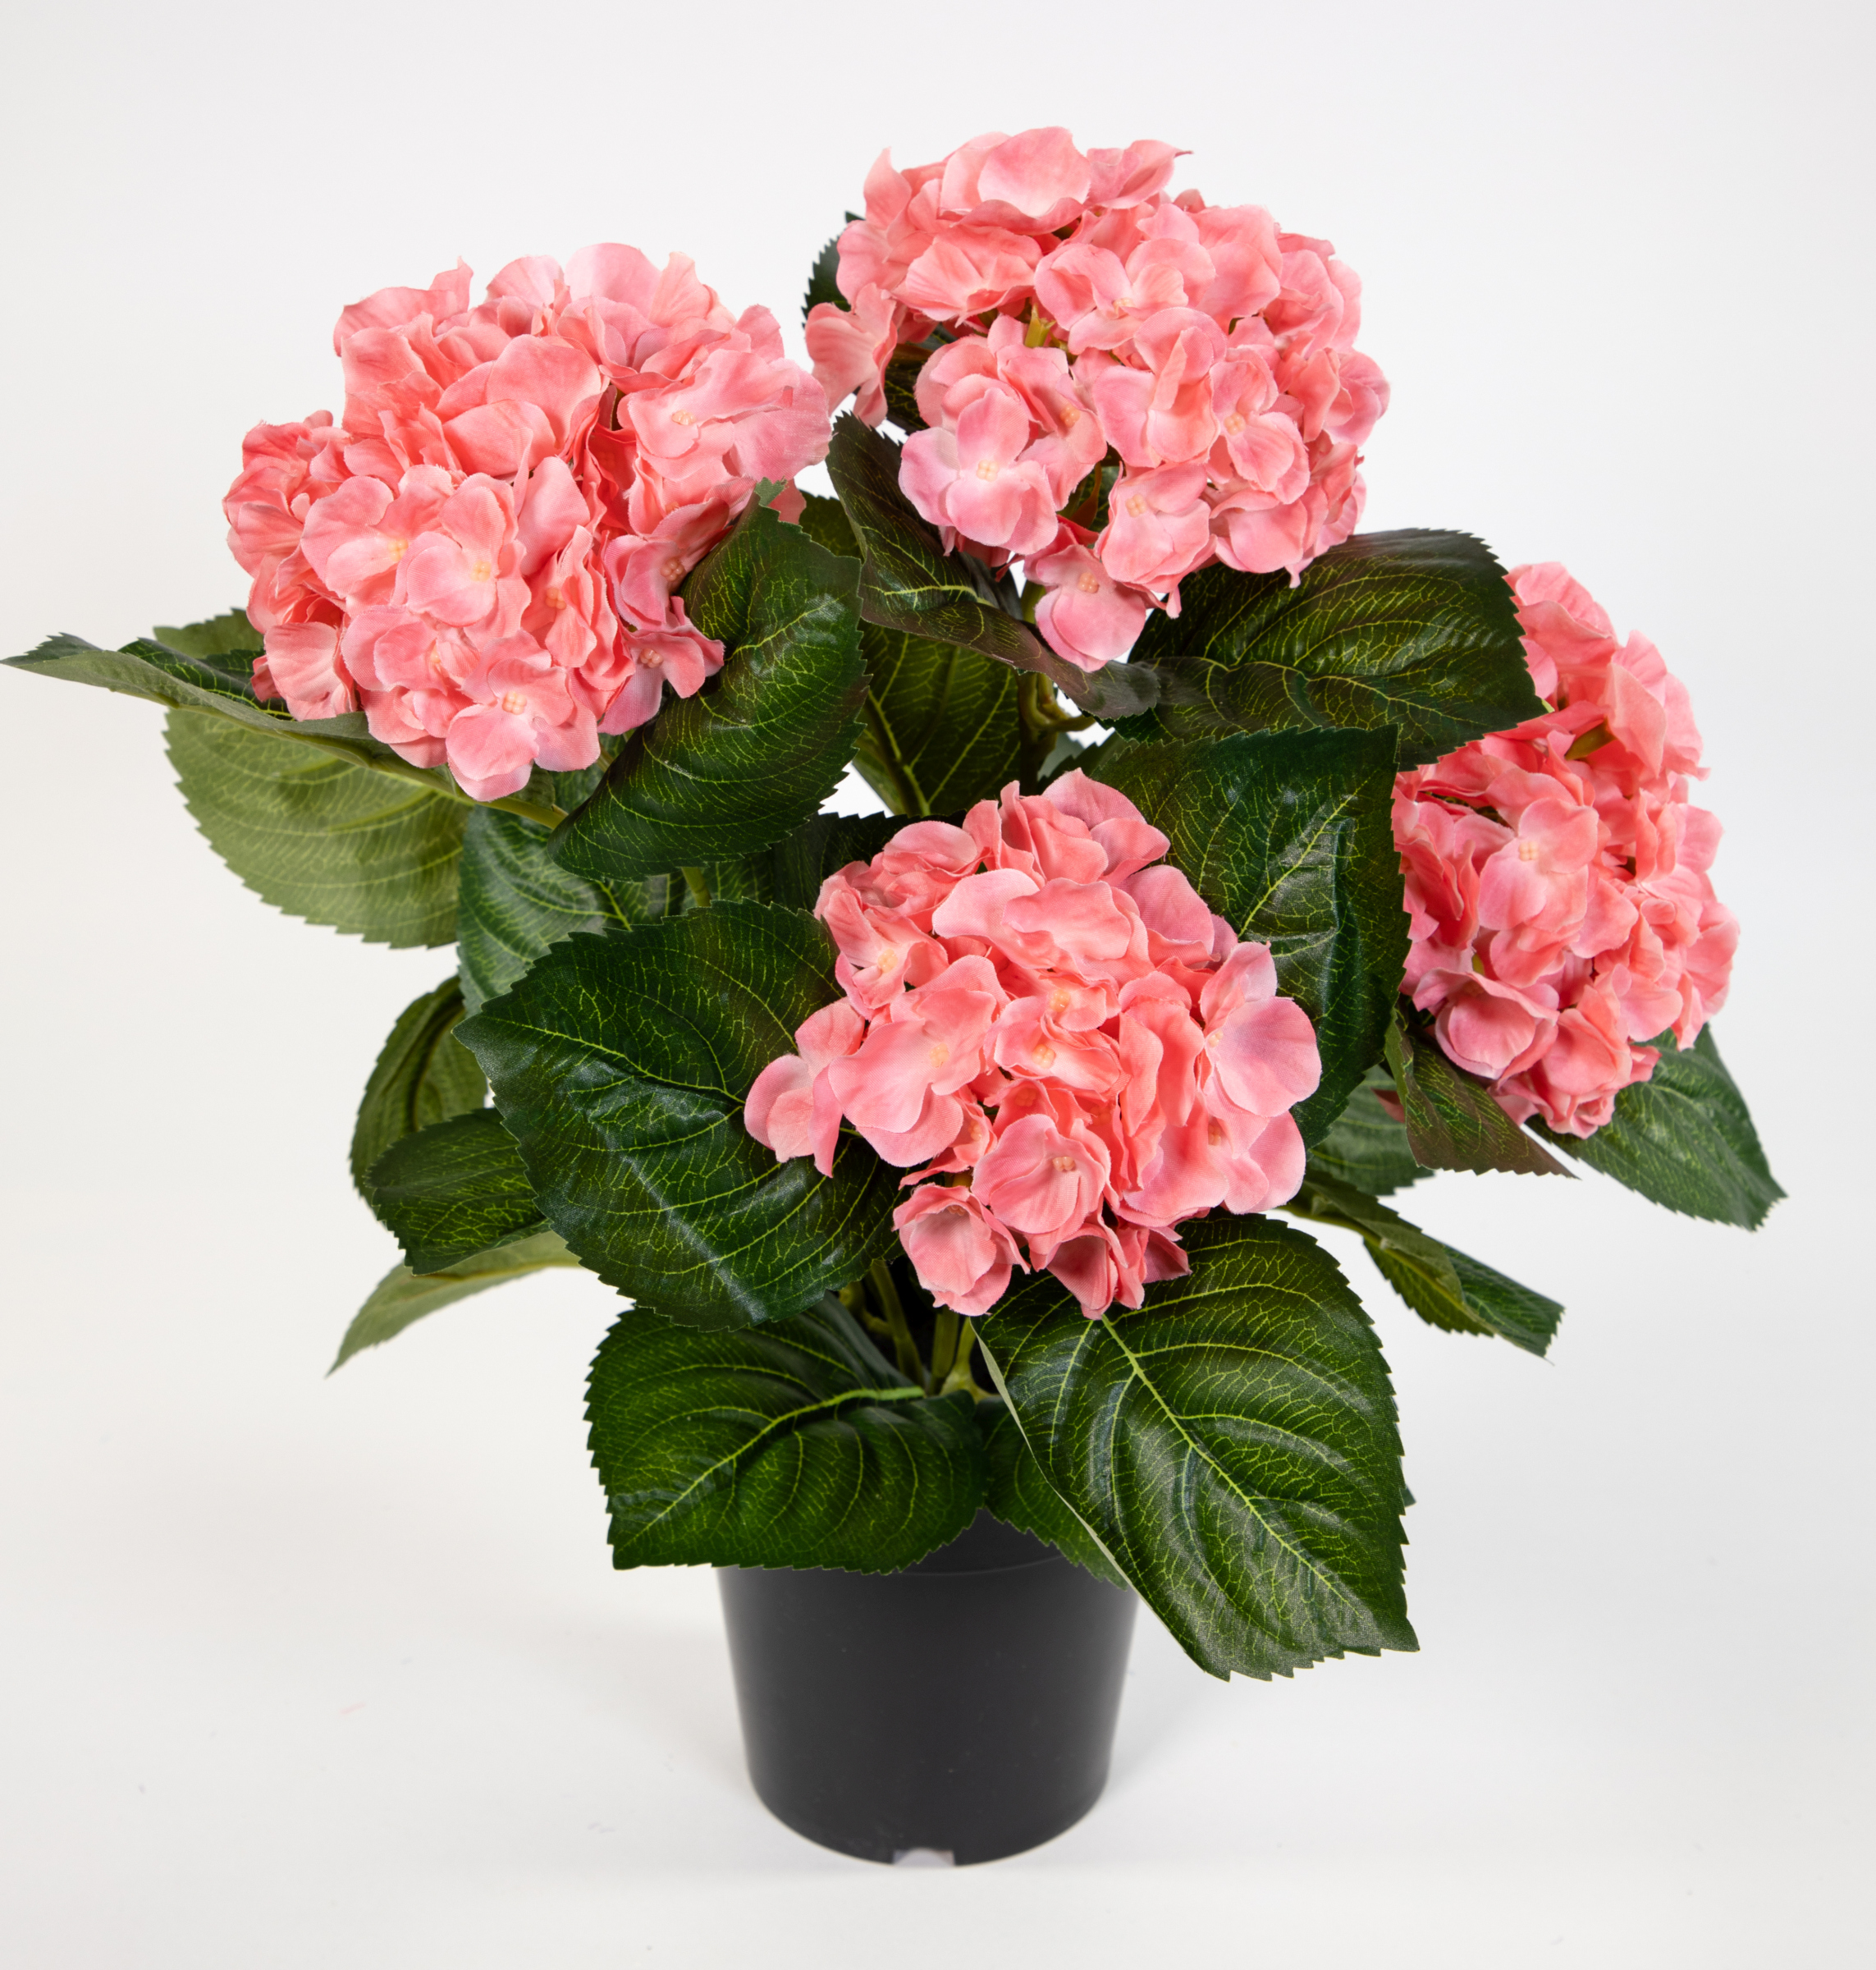 Hortensienbusch Deluxe 42cm rosa-pink LM im künstliche Hortensie Kunstpflanzen Pflanzen Blumen Topf